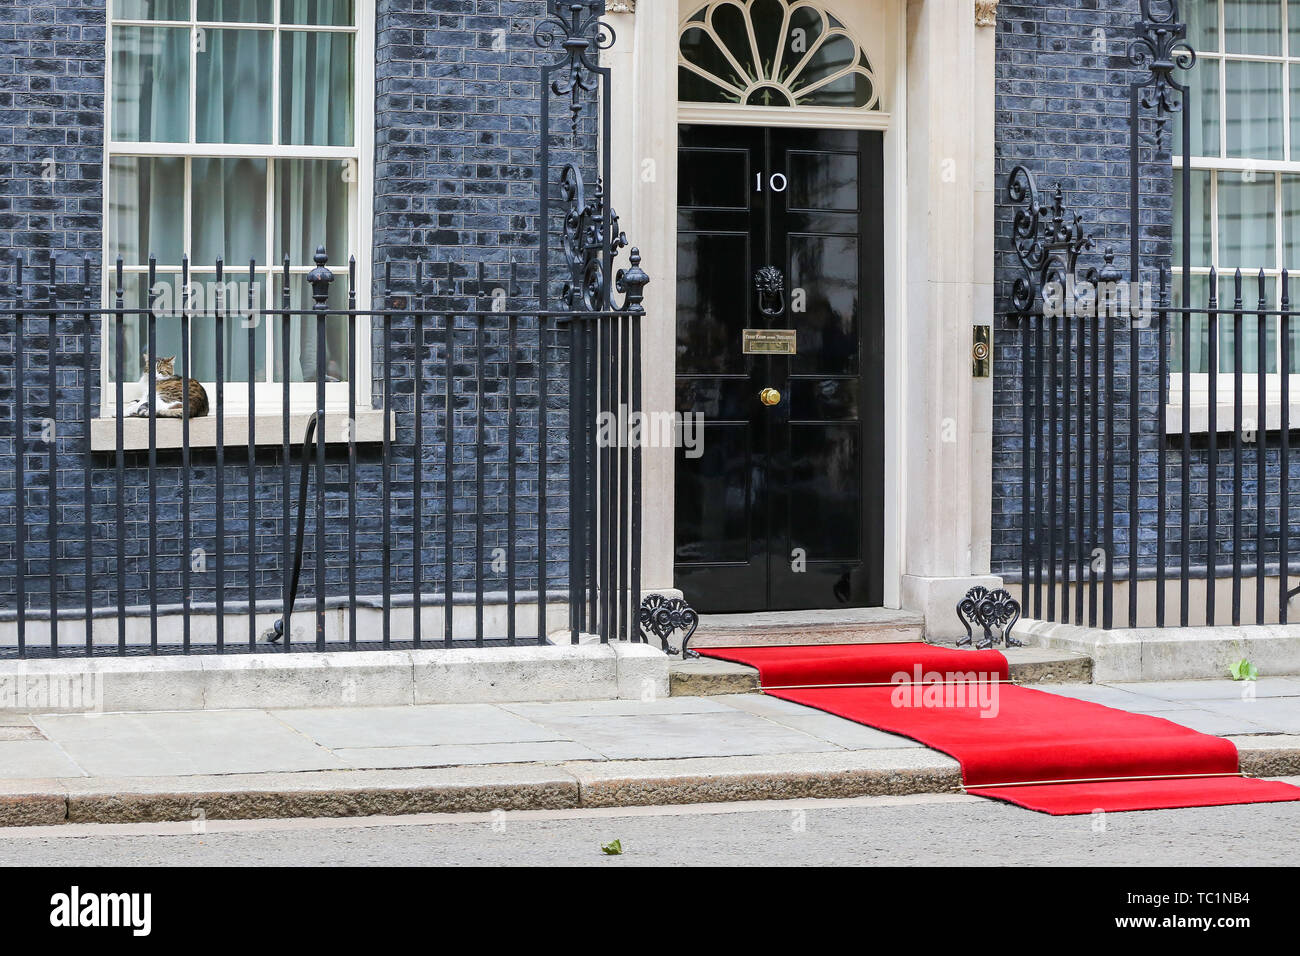 Ein Roter Teppich für die US-Präsident Donald Trump und First Lady Melania Trump Besuch in Downing Street am zweiten Tag Ihrer dreitägigen Staatsbesuch in Großbritannien gelegt. Larry, der 10 Downing Street cat und Chief Mouser des Cabinet Office schläft auf der Fensterbank. Stockfoto